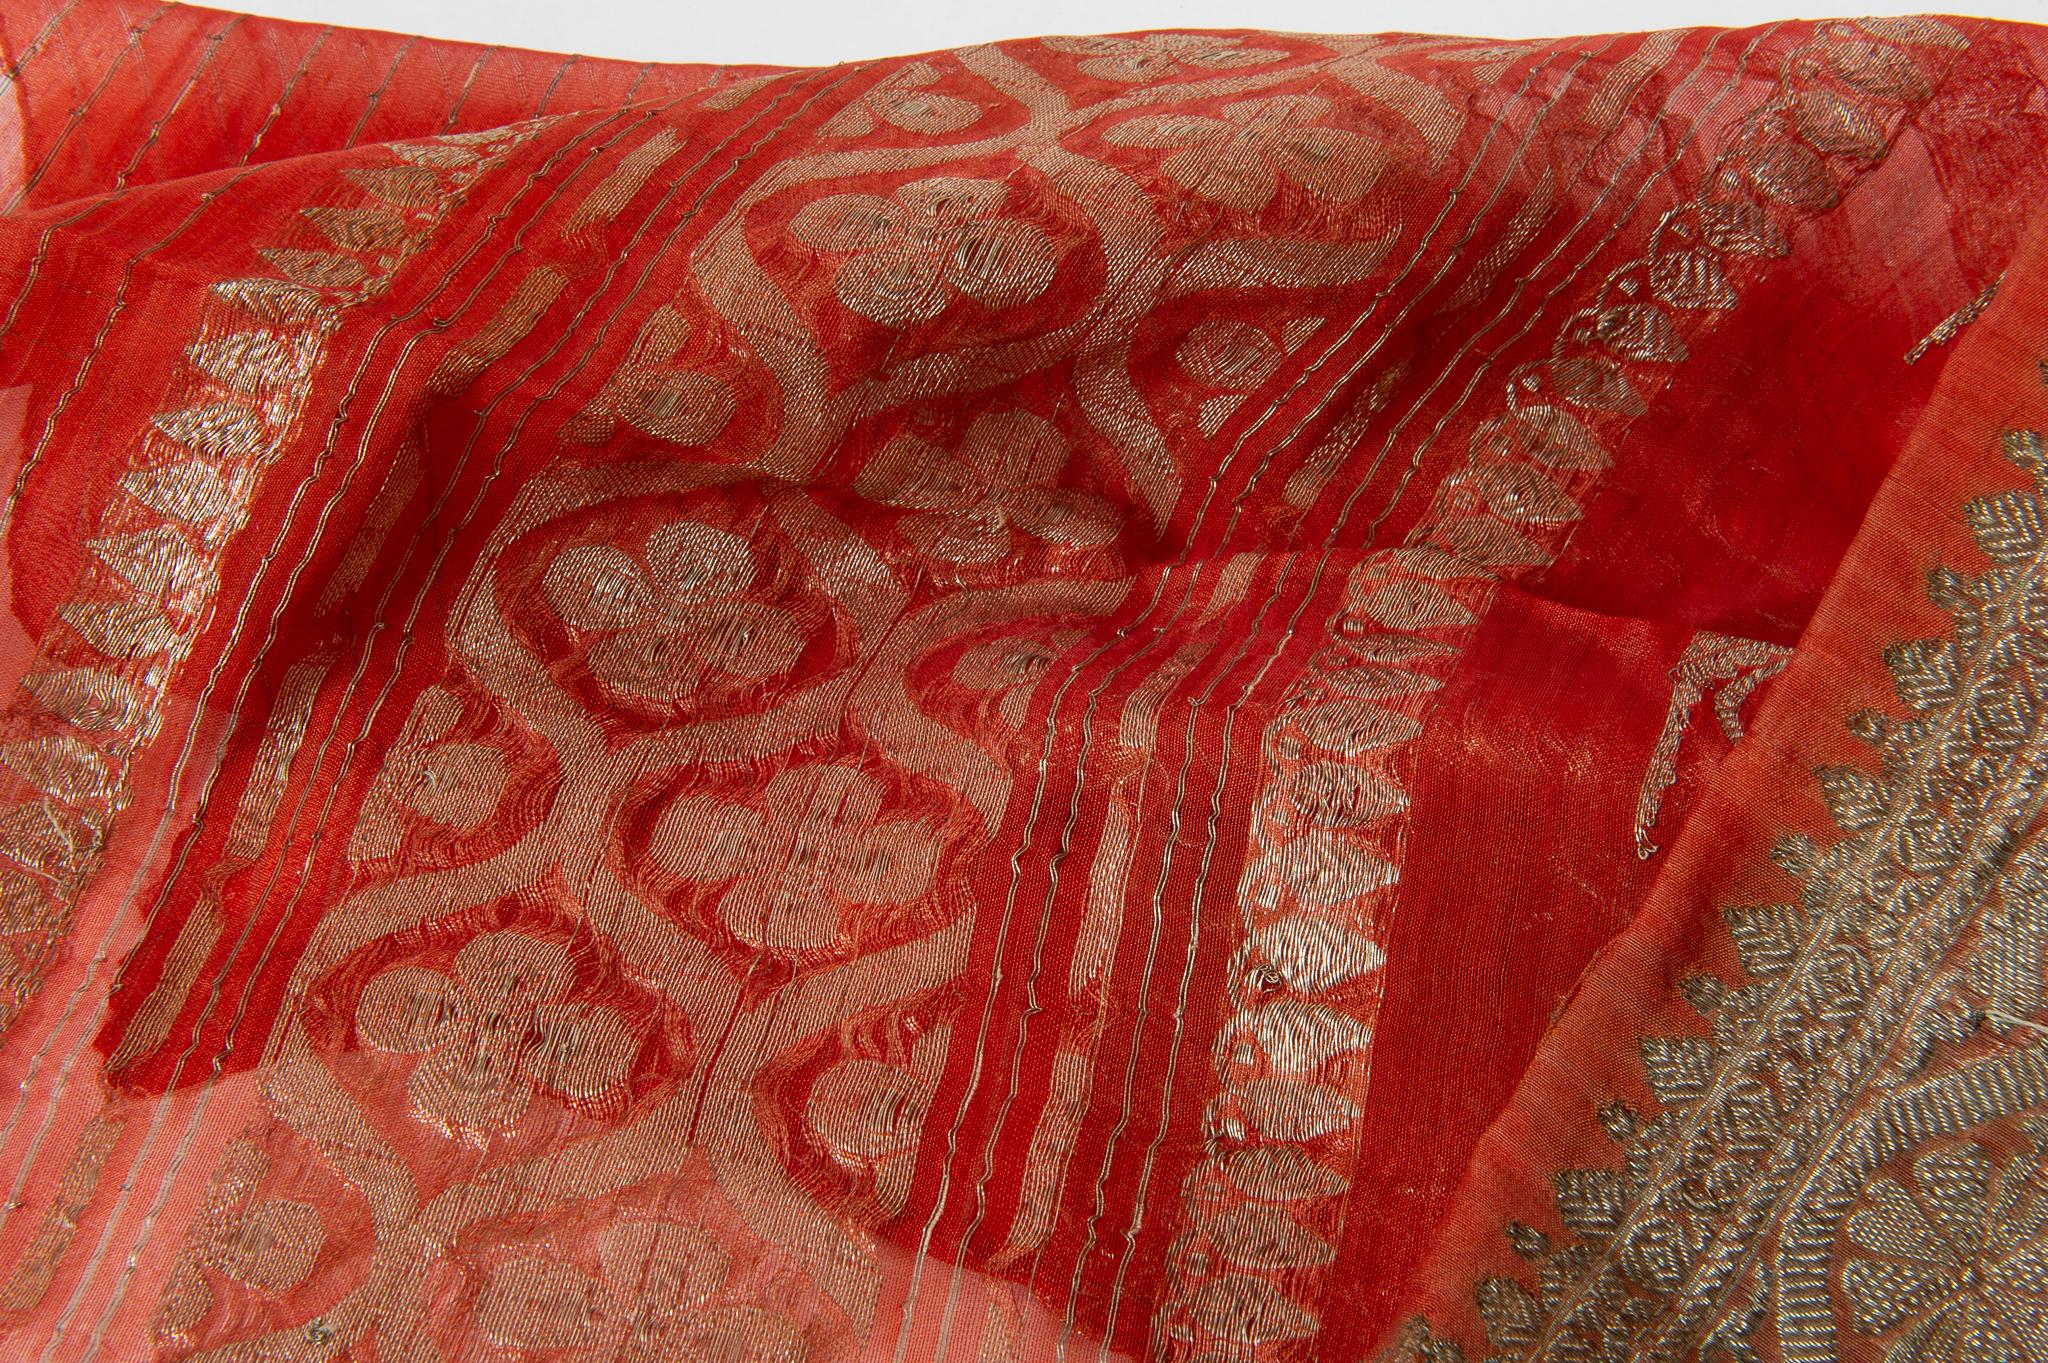 Indischer Vintage-Sari in einer schönen Korallenfarbe, mit floralen Mustern und einer reichen Bordüre. Es wurde getragen, daher gibt es einige Flecken, auch wenn gewaschen.
Einige Sari sind aus Seide, andere aus einer synthetischen Mischung -
Es